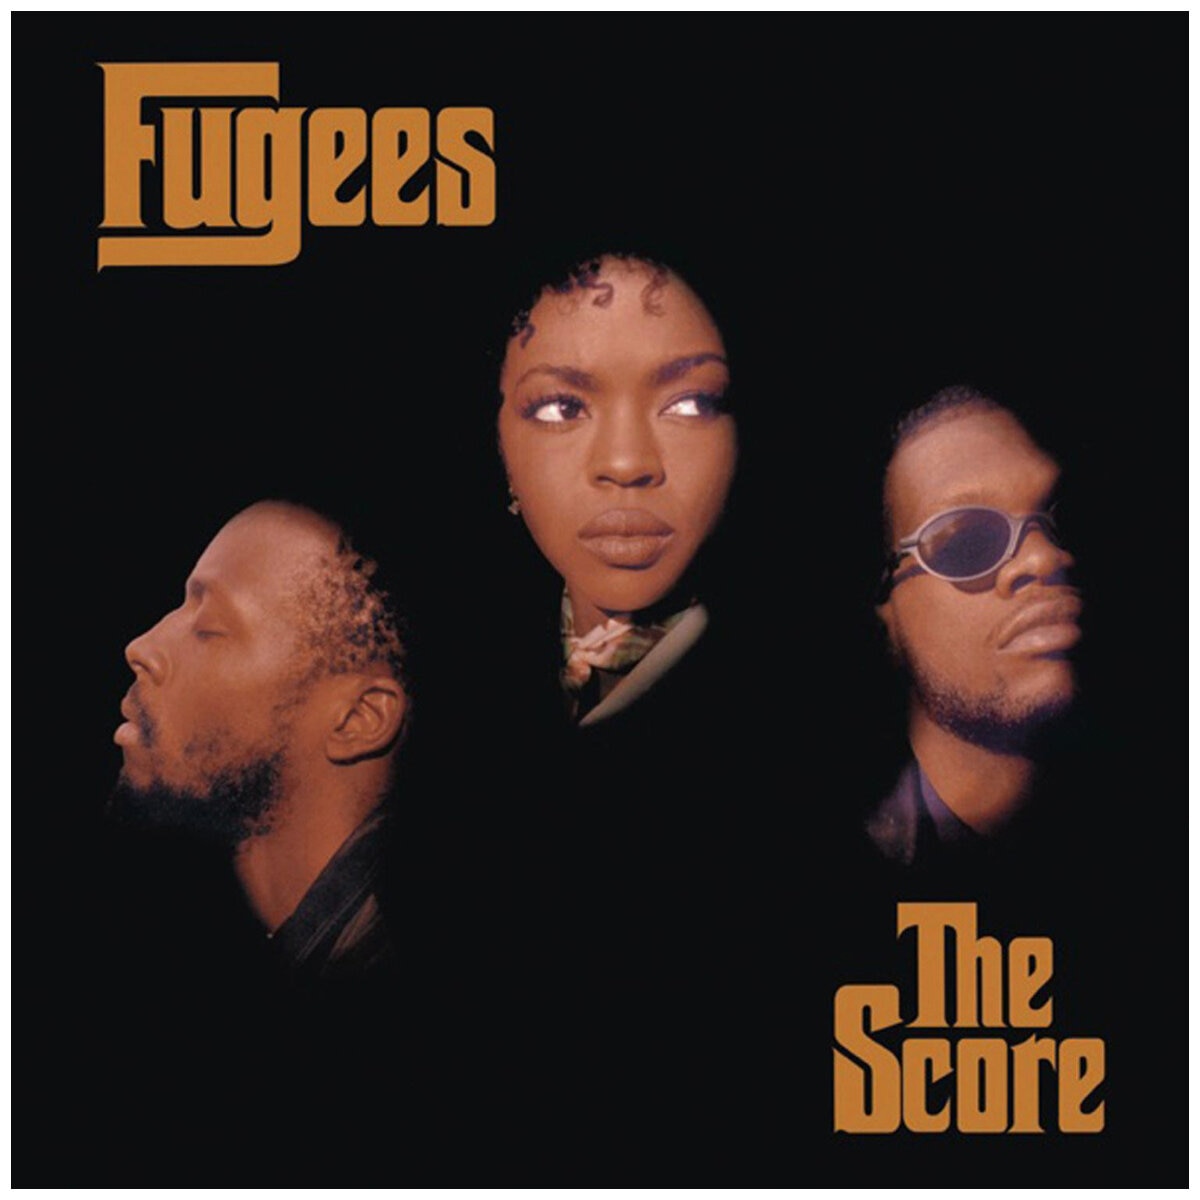 Fugees The Score Vinyl Album